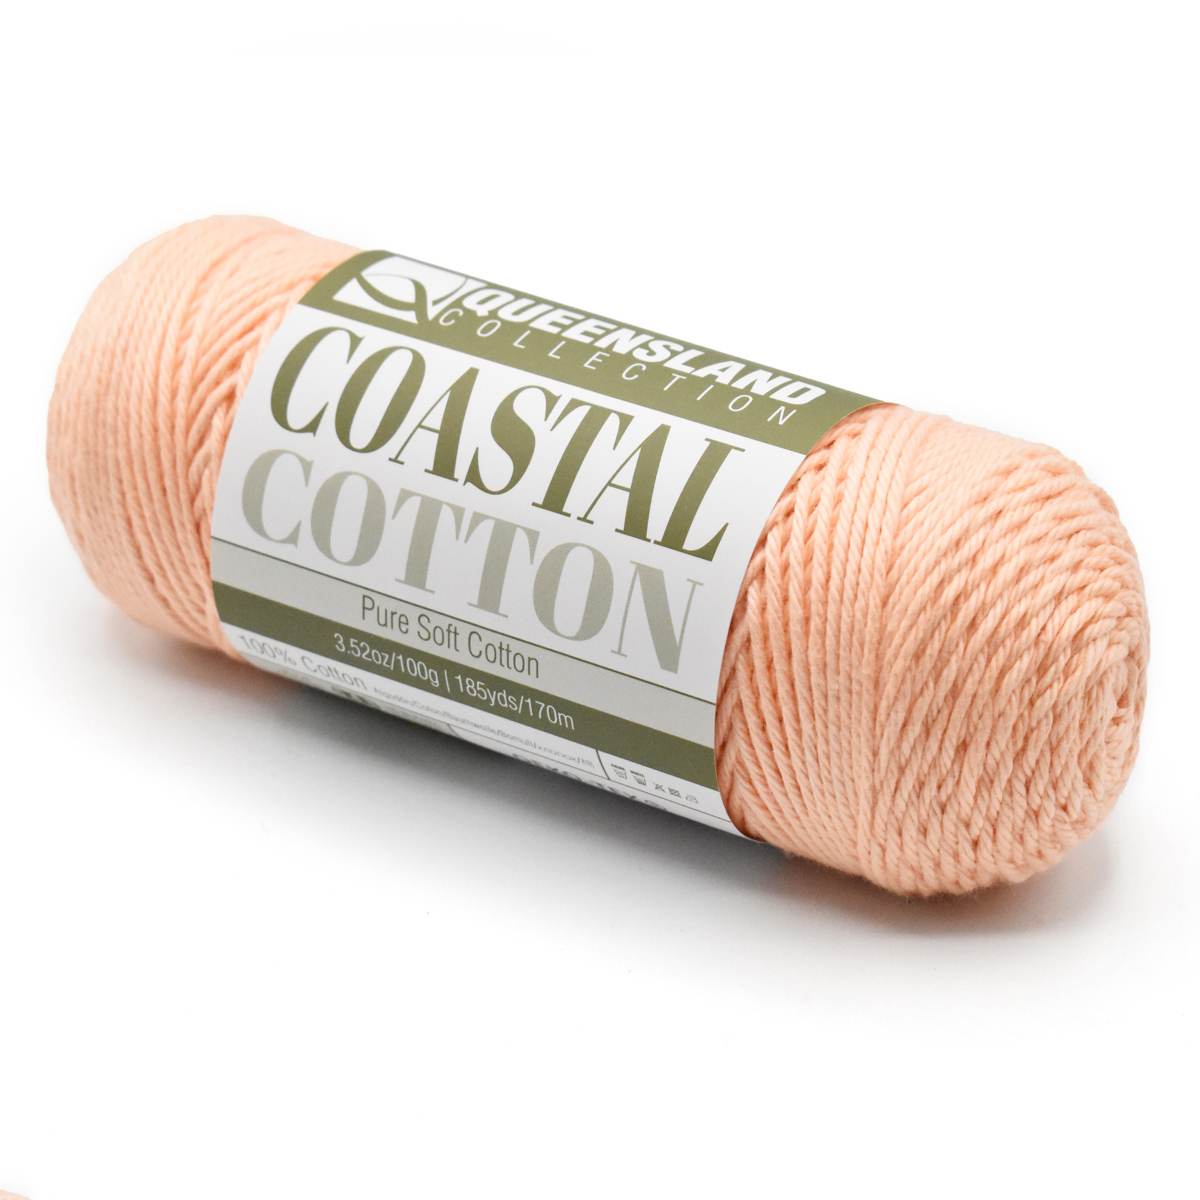 a skein of Coastal Cotton